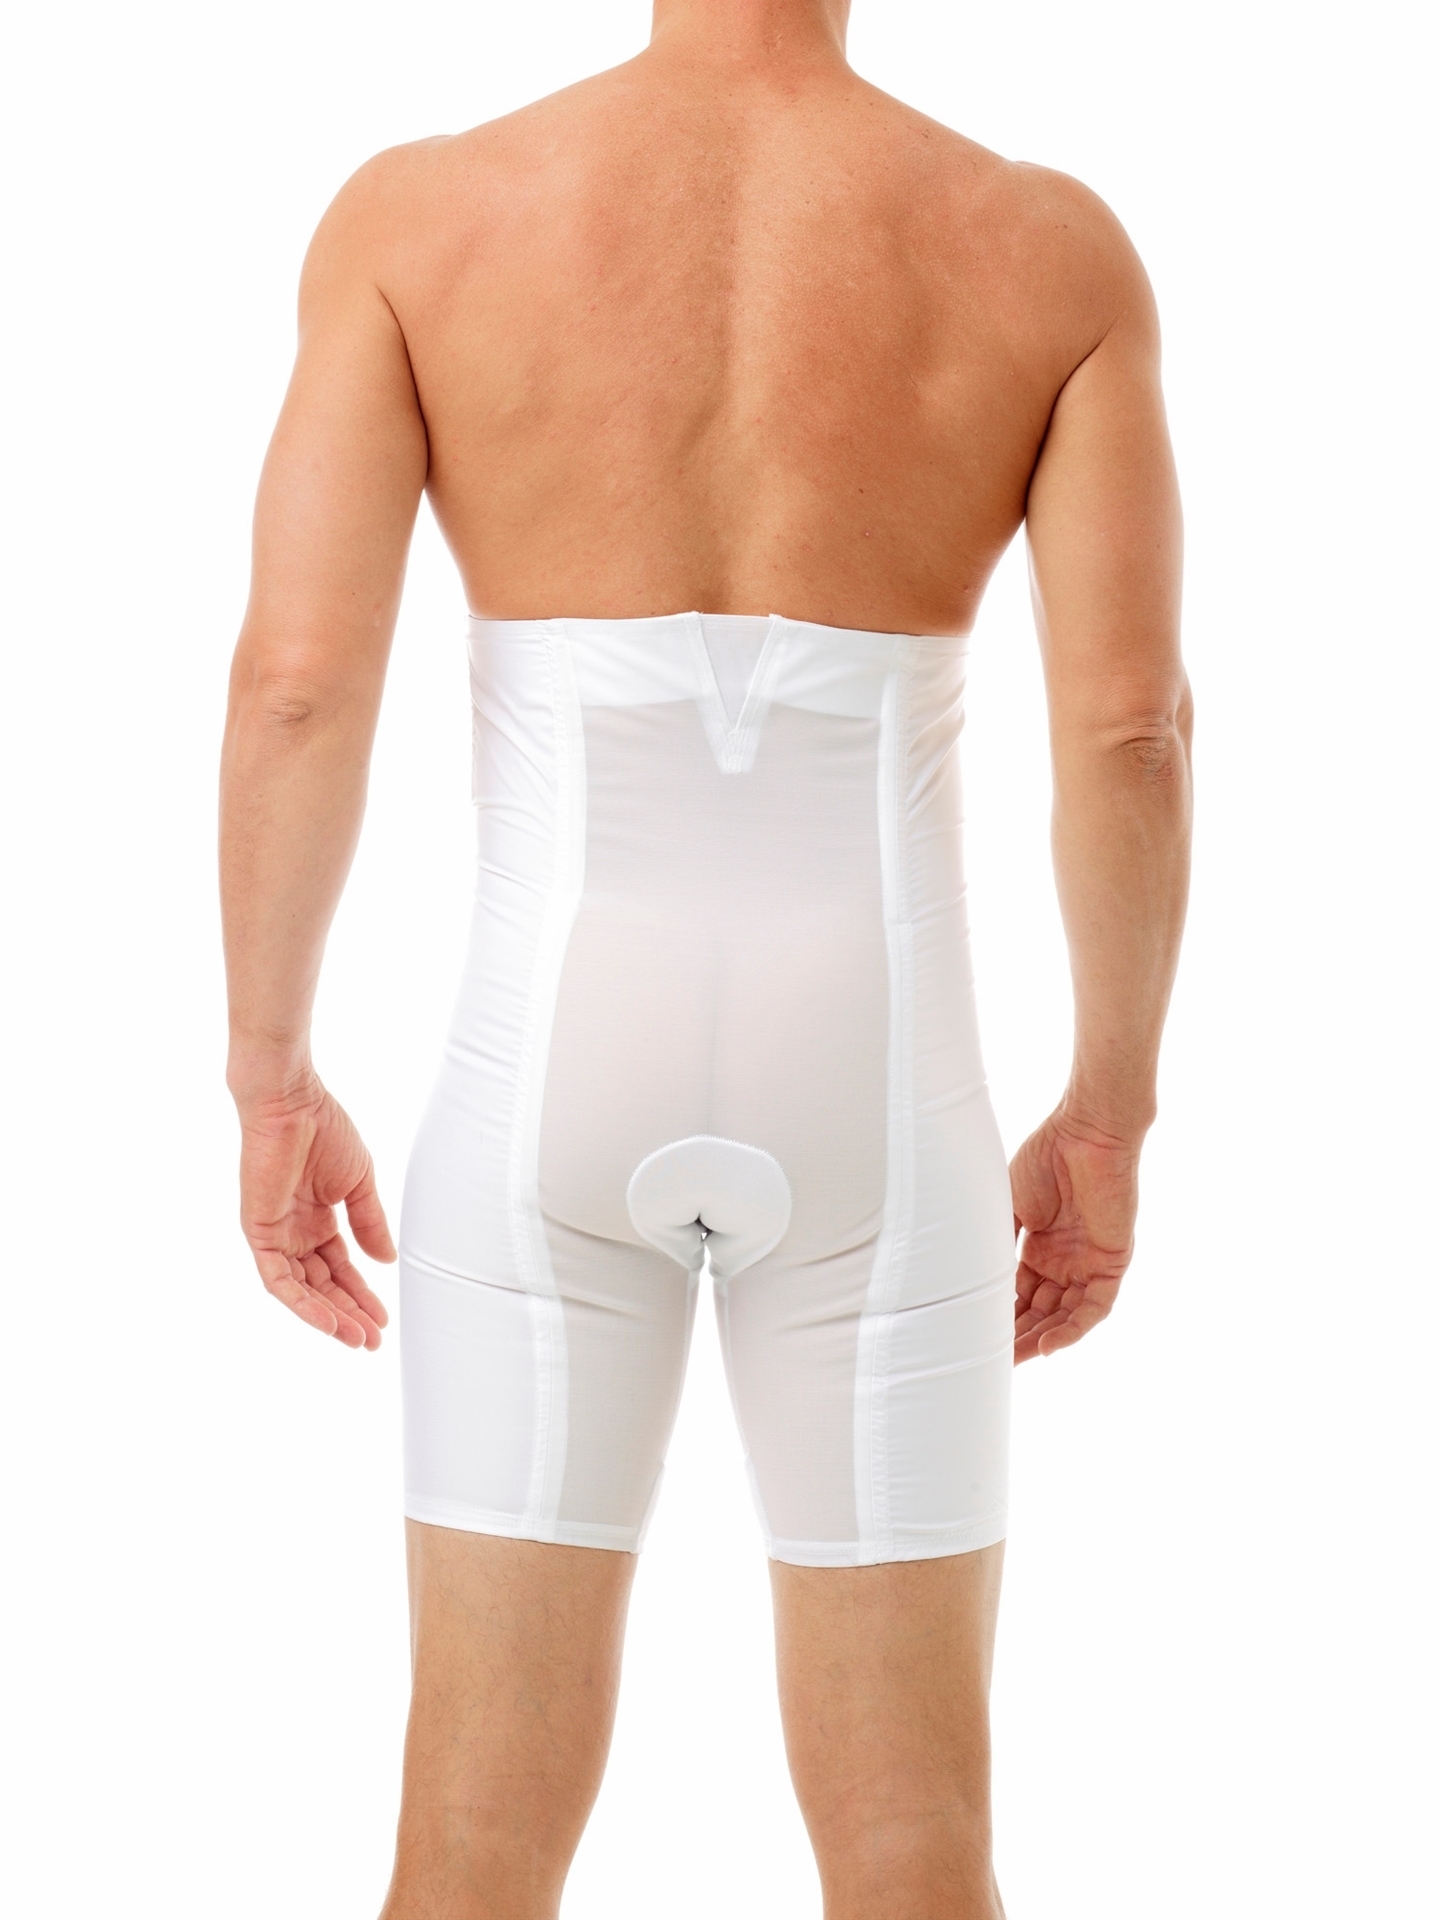 Underworks 12-Inch Belly Buster Zip-n-Trim Men’s Compression Underwear -  White - S